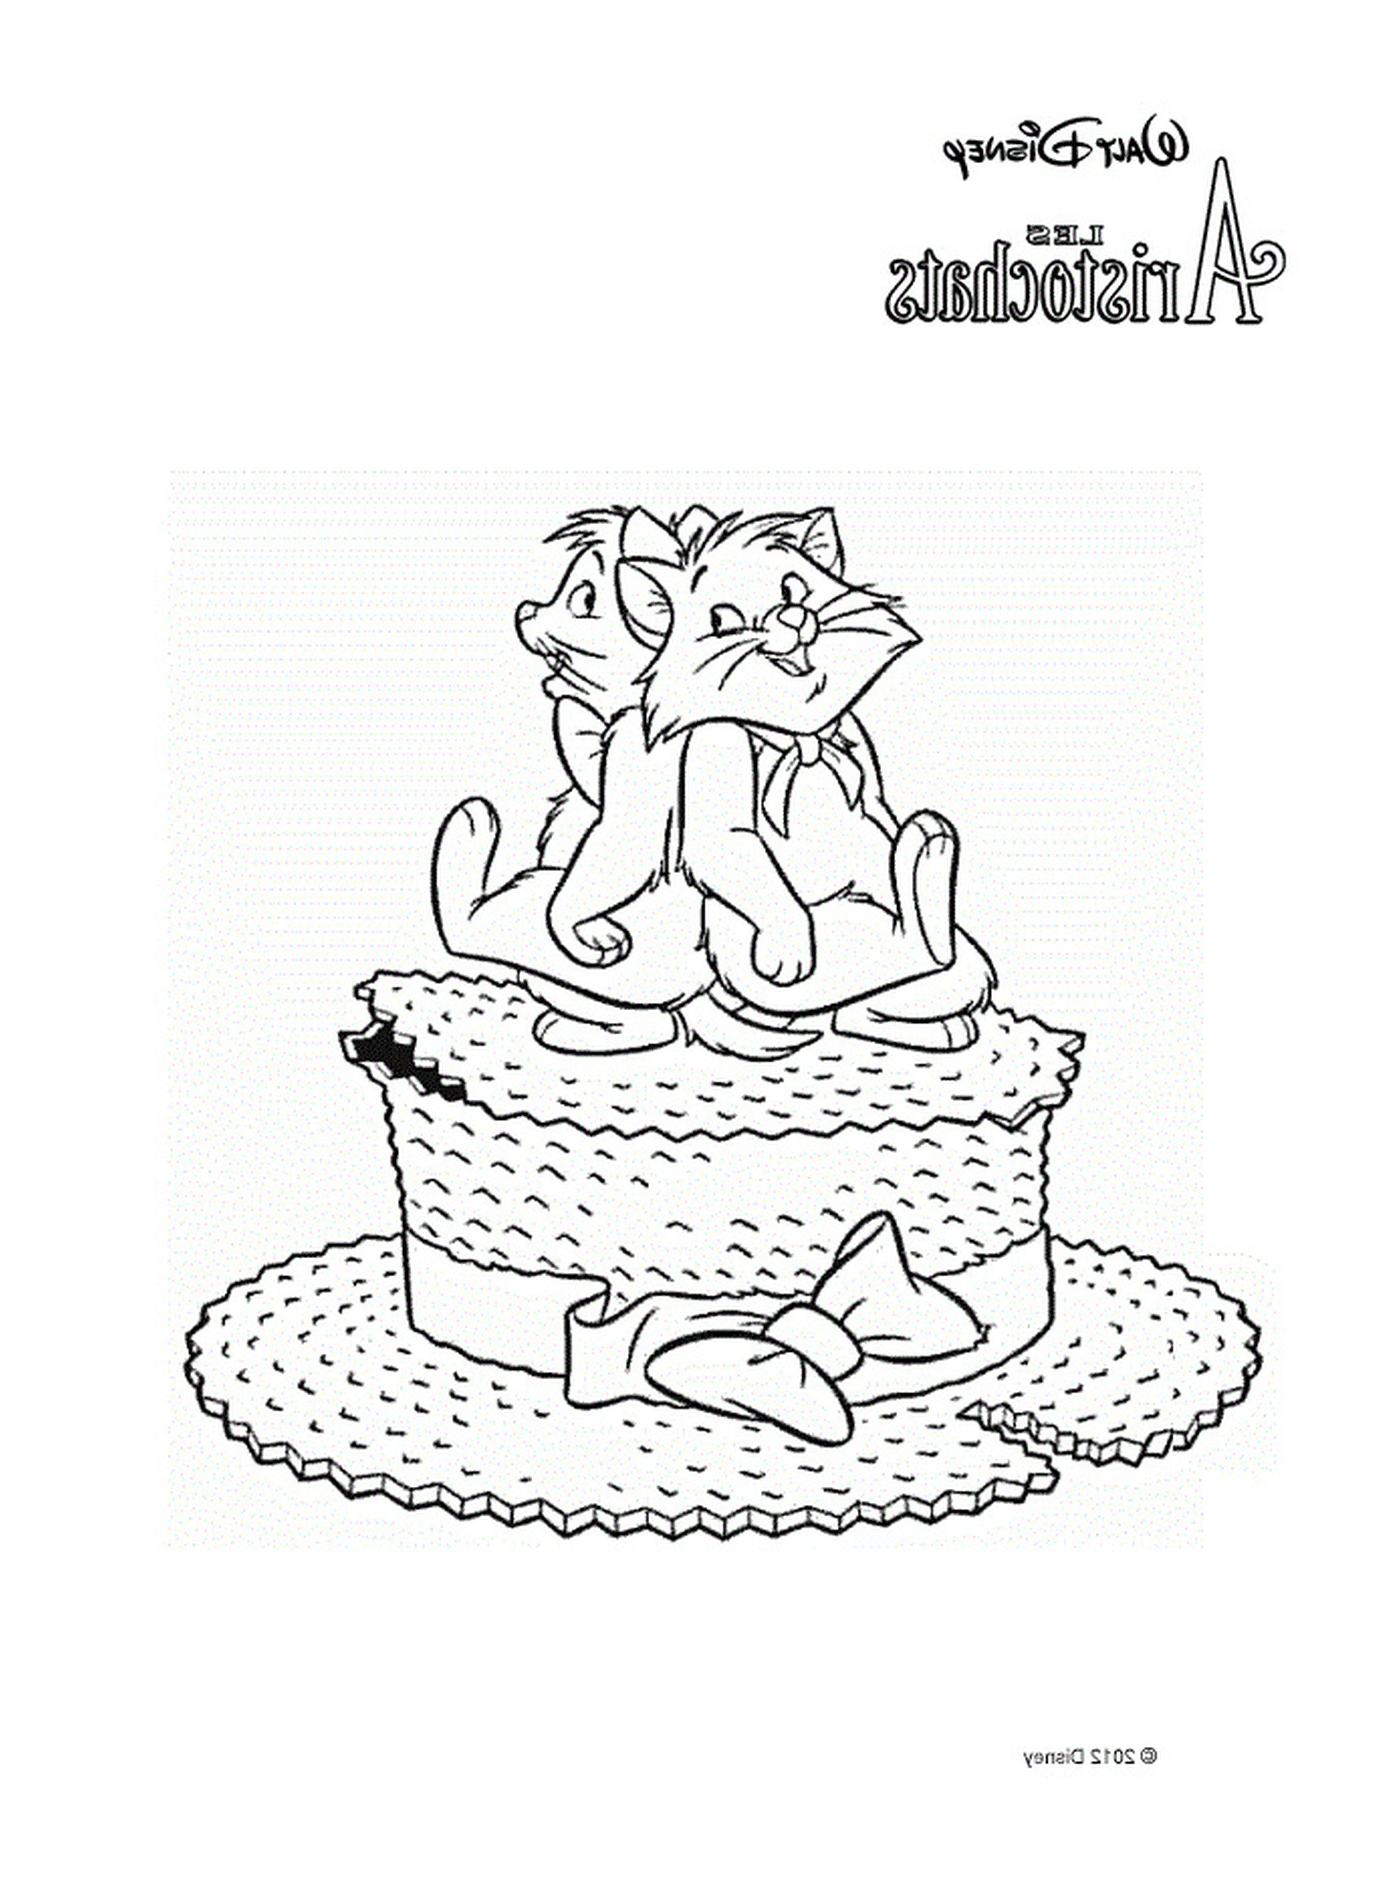  Две кошки сидят на большом торте 